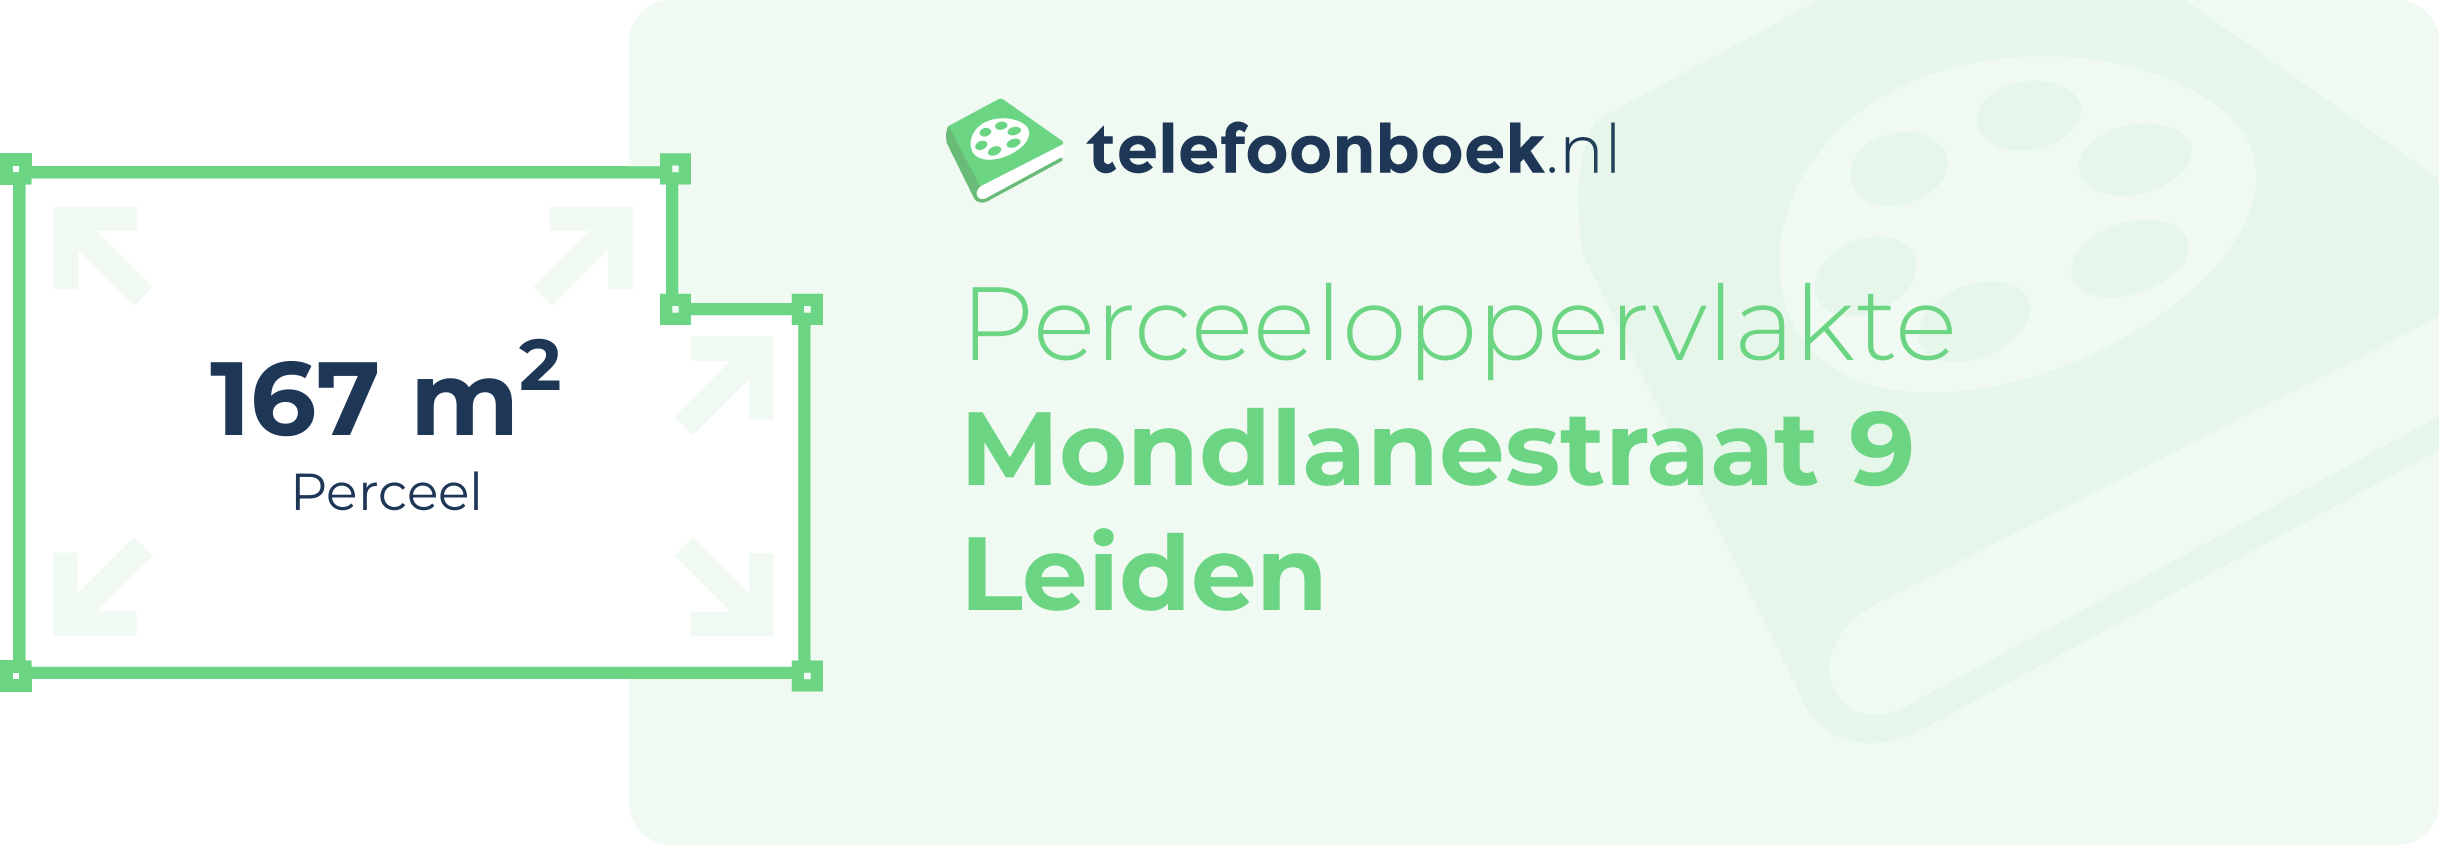 Perceeloppervlakte Mondlanestraat 9 Leiden